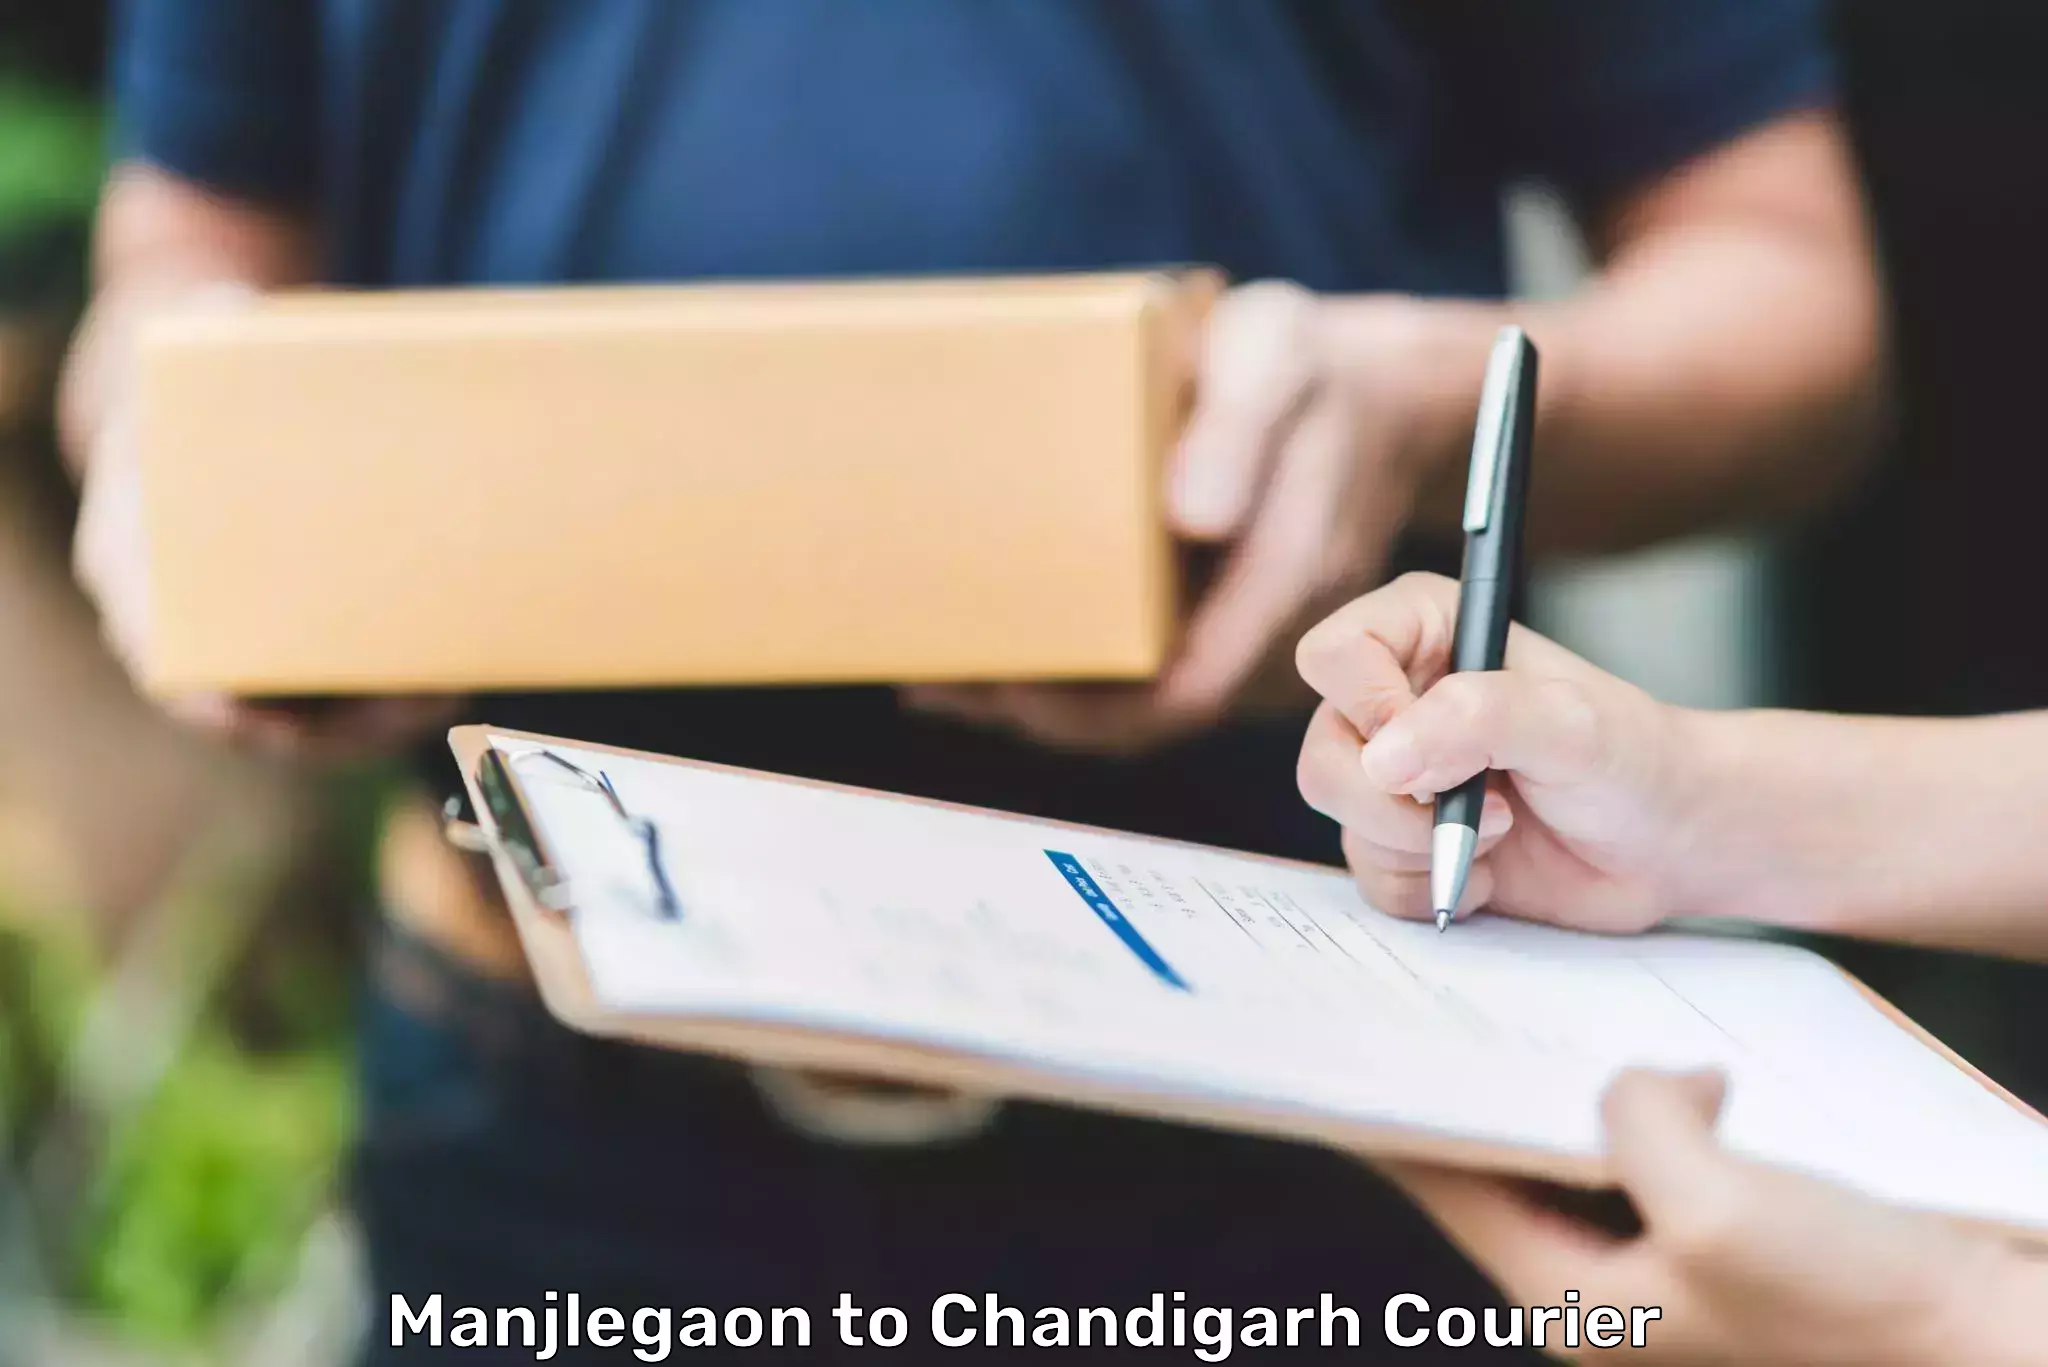 24/7 courier service Manjlegaon to Chandigarh